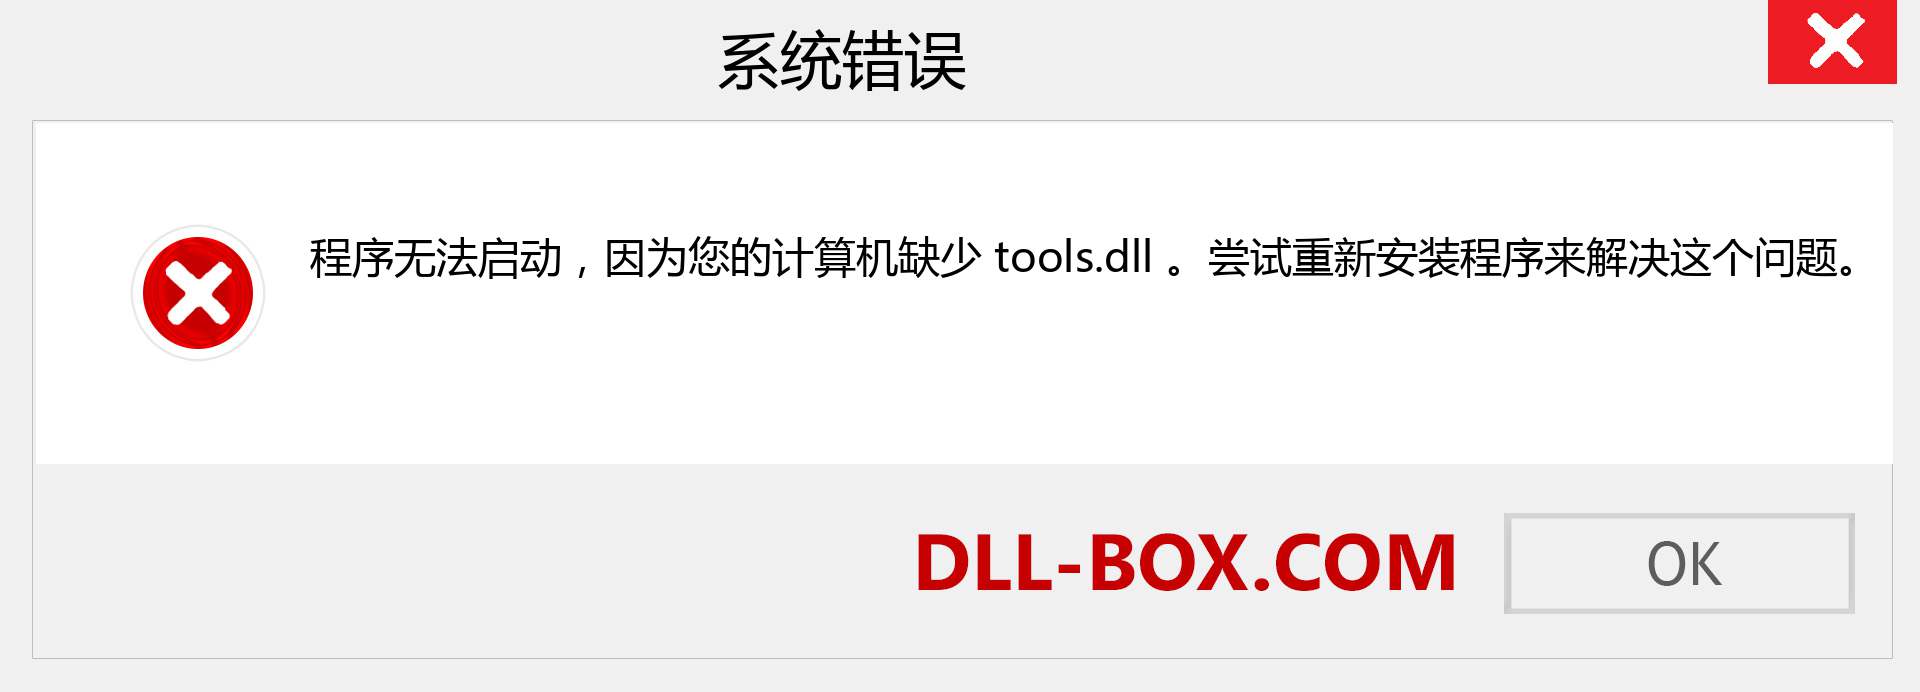 tools.dll 文件丢失？。 适用于 Windows 7、8、10 的下载 - 修复 Windows、照片、图像上的 tools dll 丢失错误